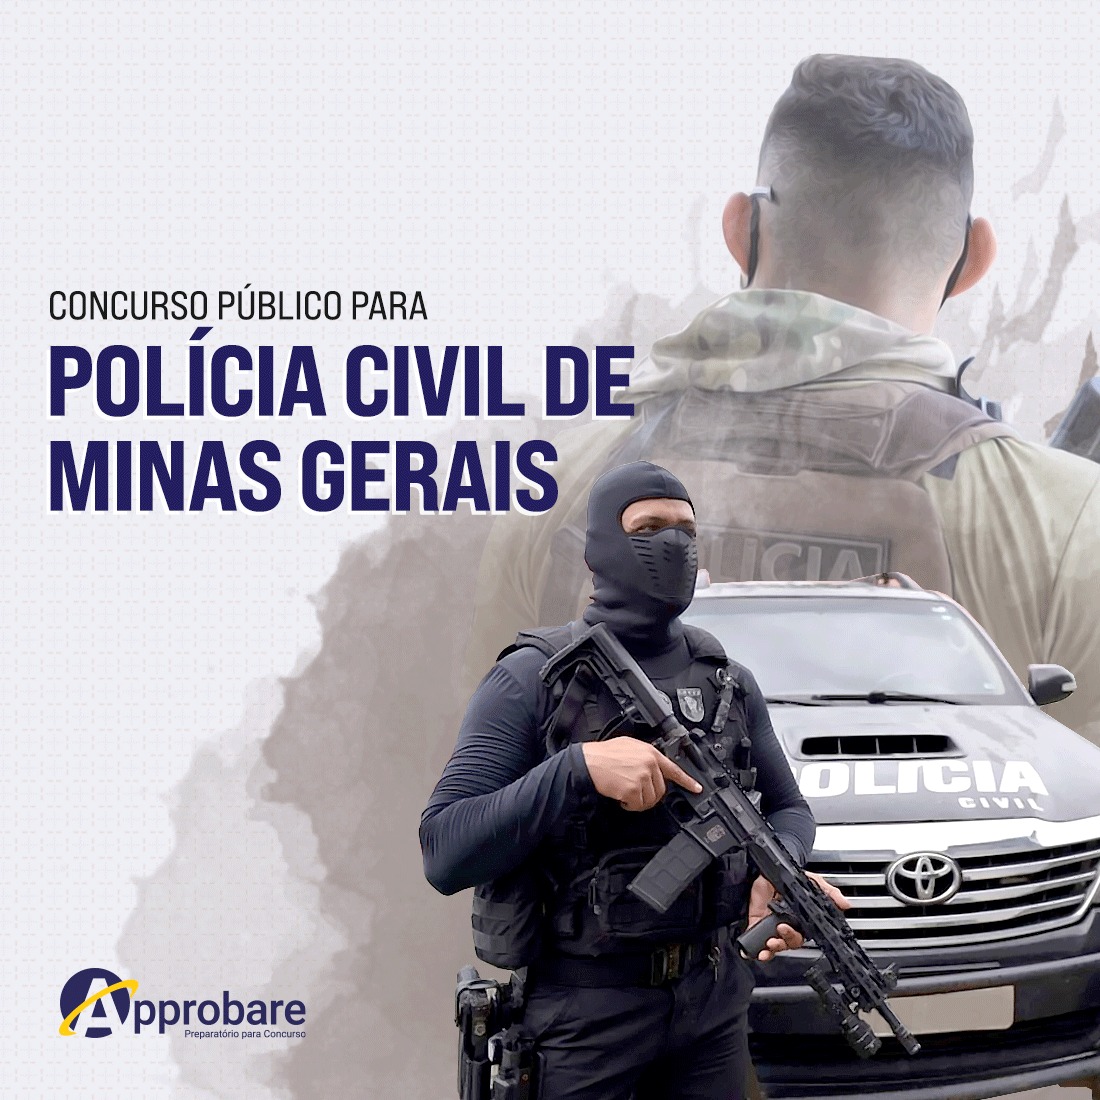 Concurso PC MG Escrivão / Investigador - Direito Constitucional 